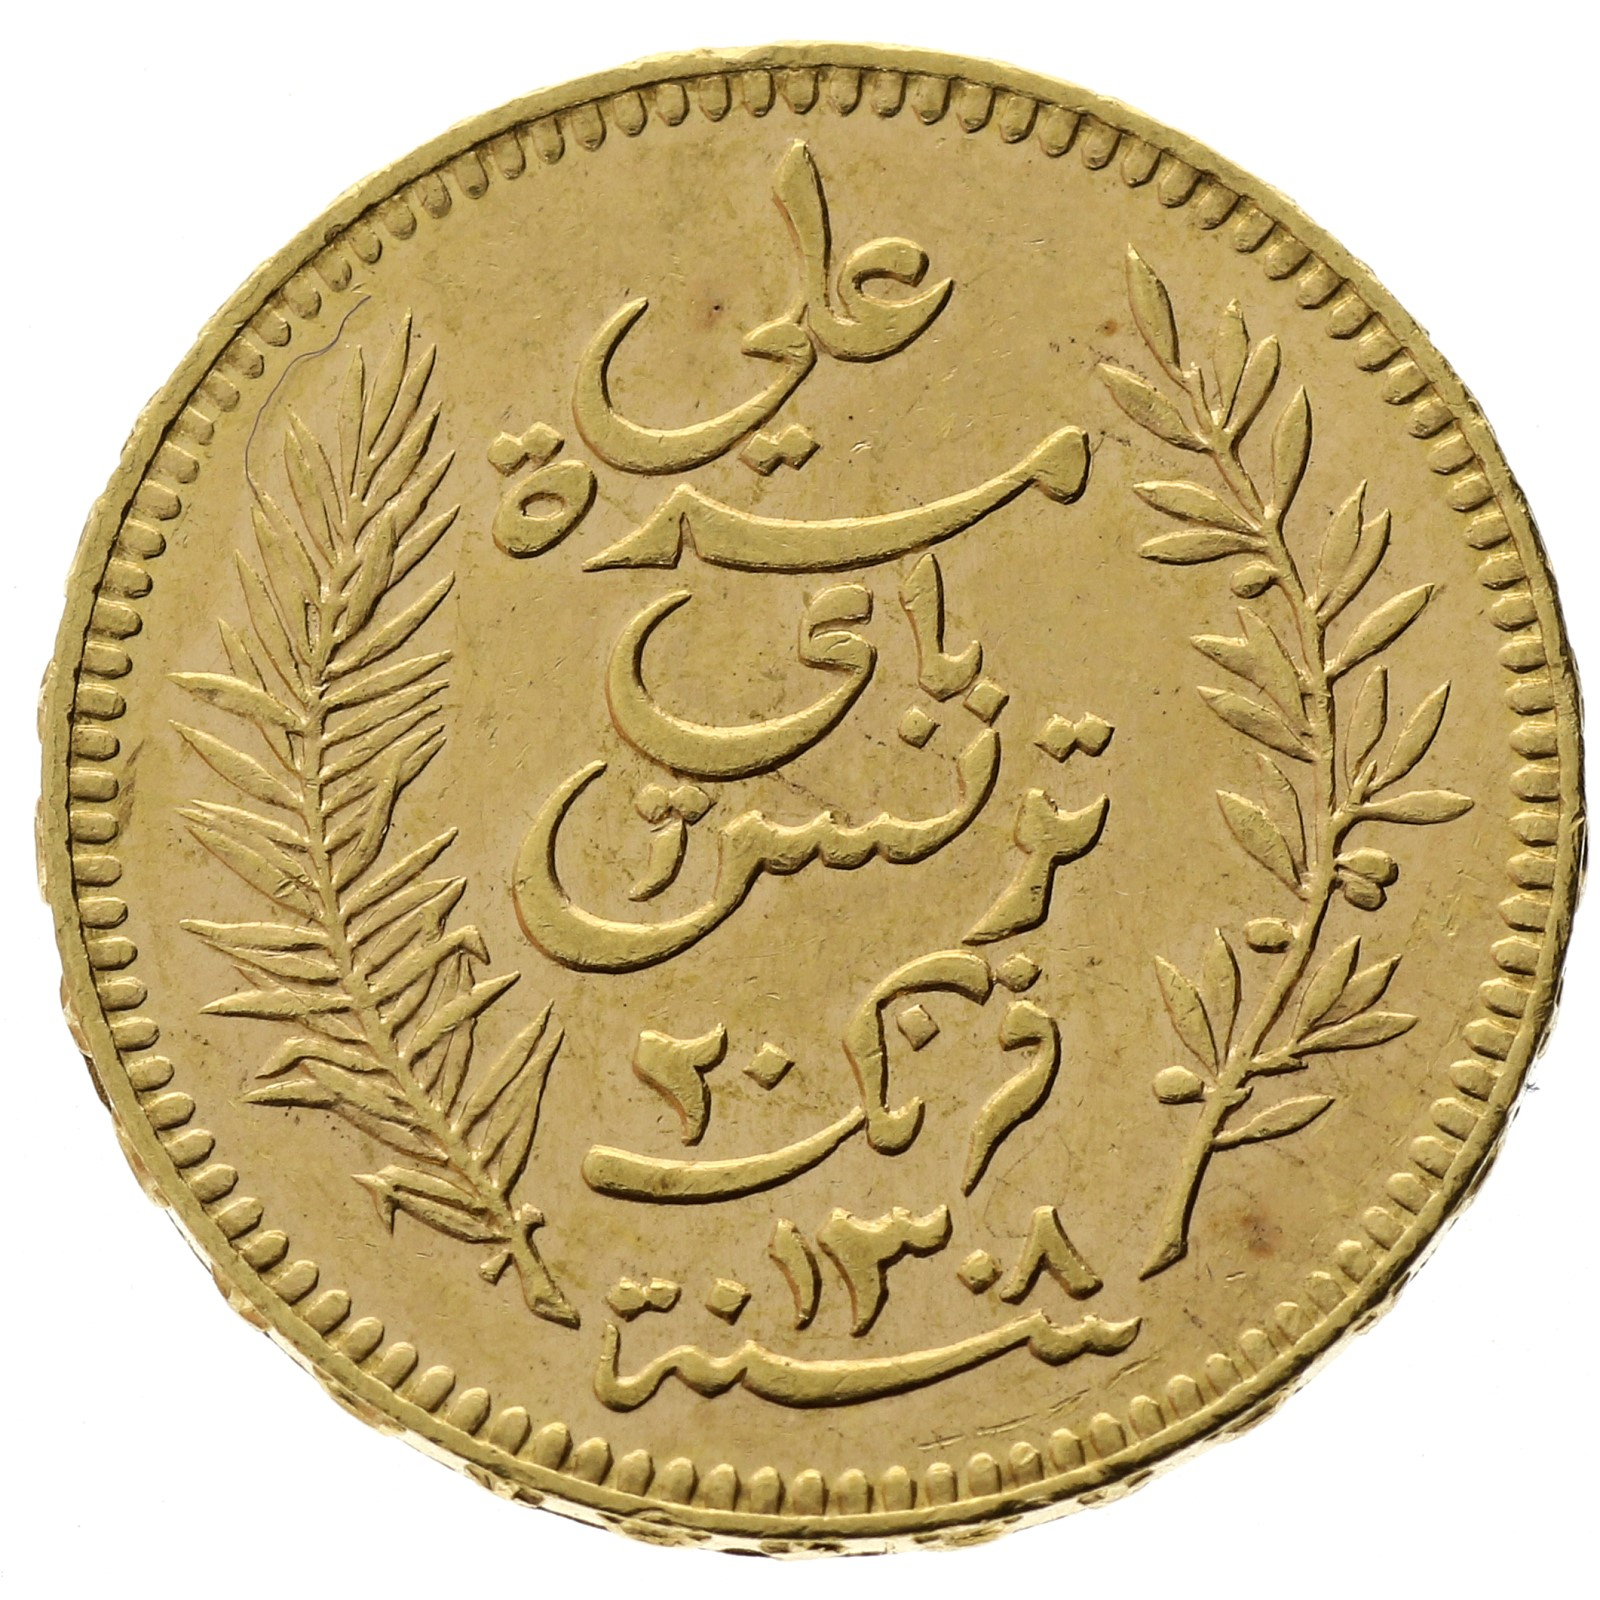 Tunisia - 20 francs - 1891 - Ali III 